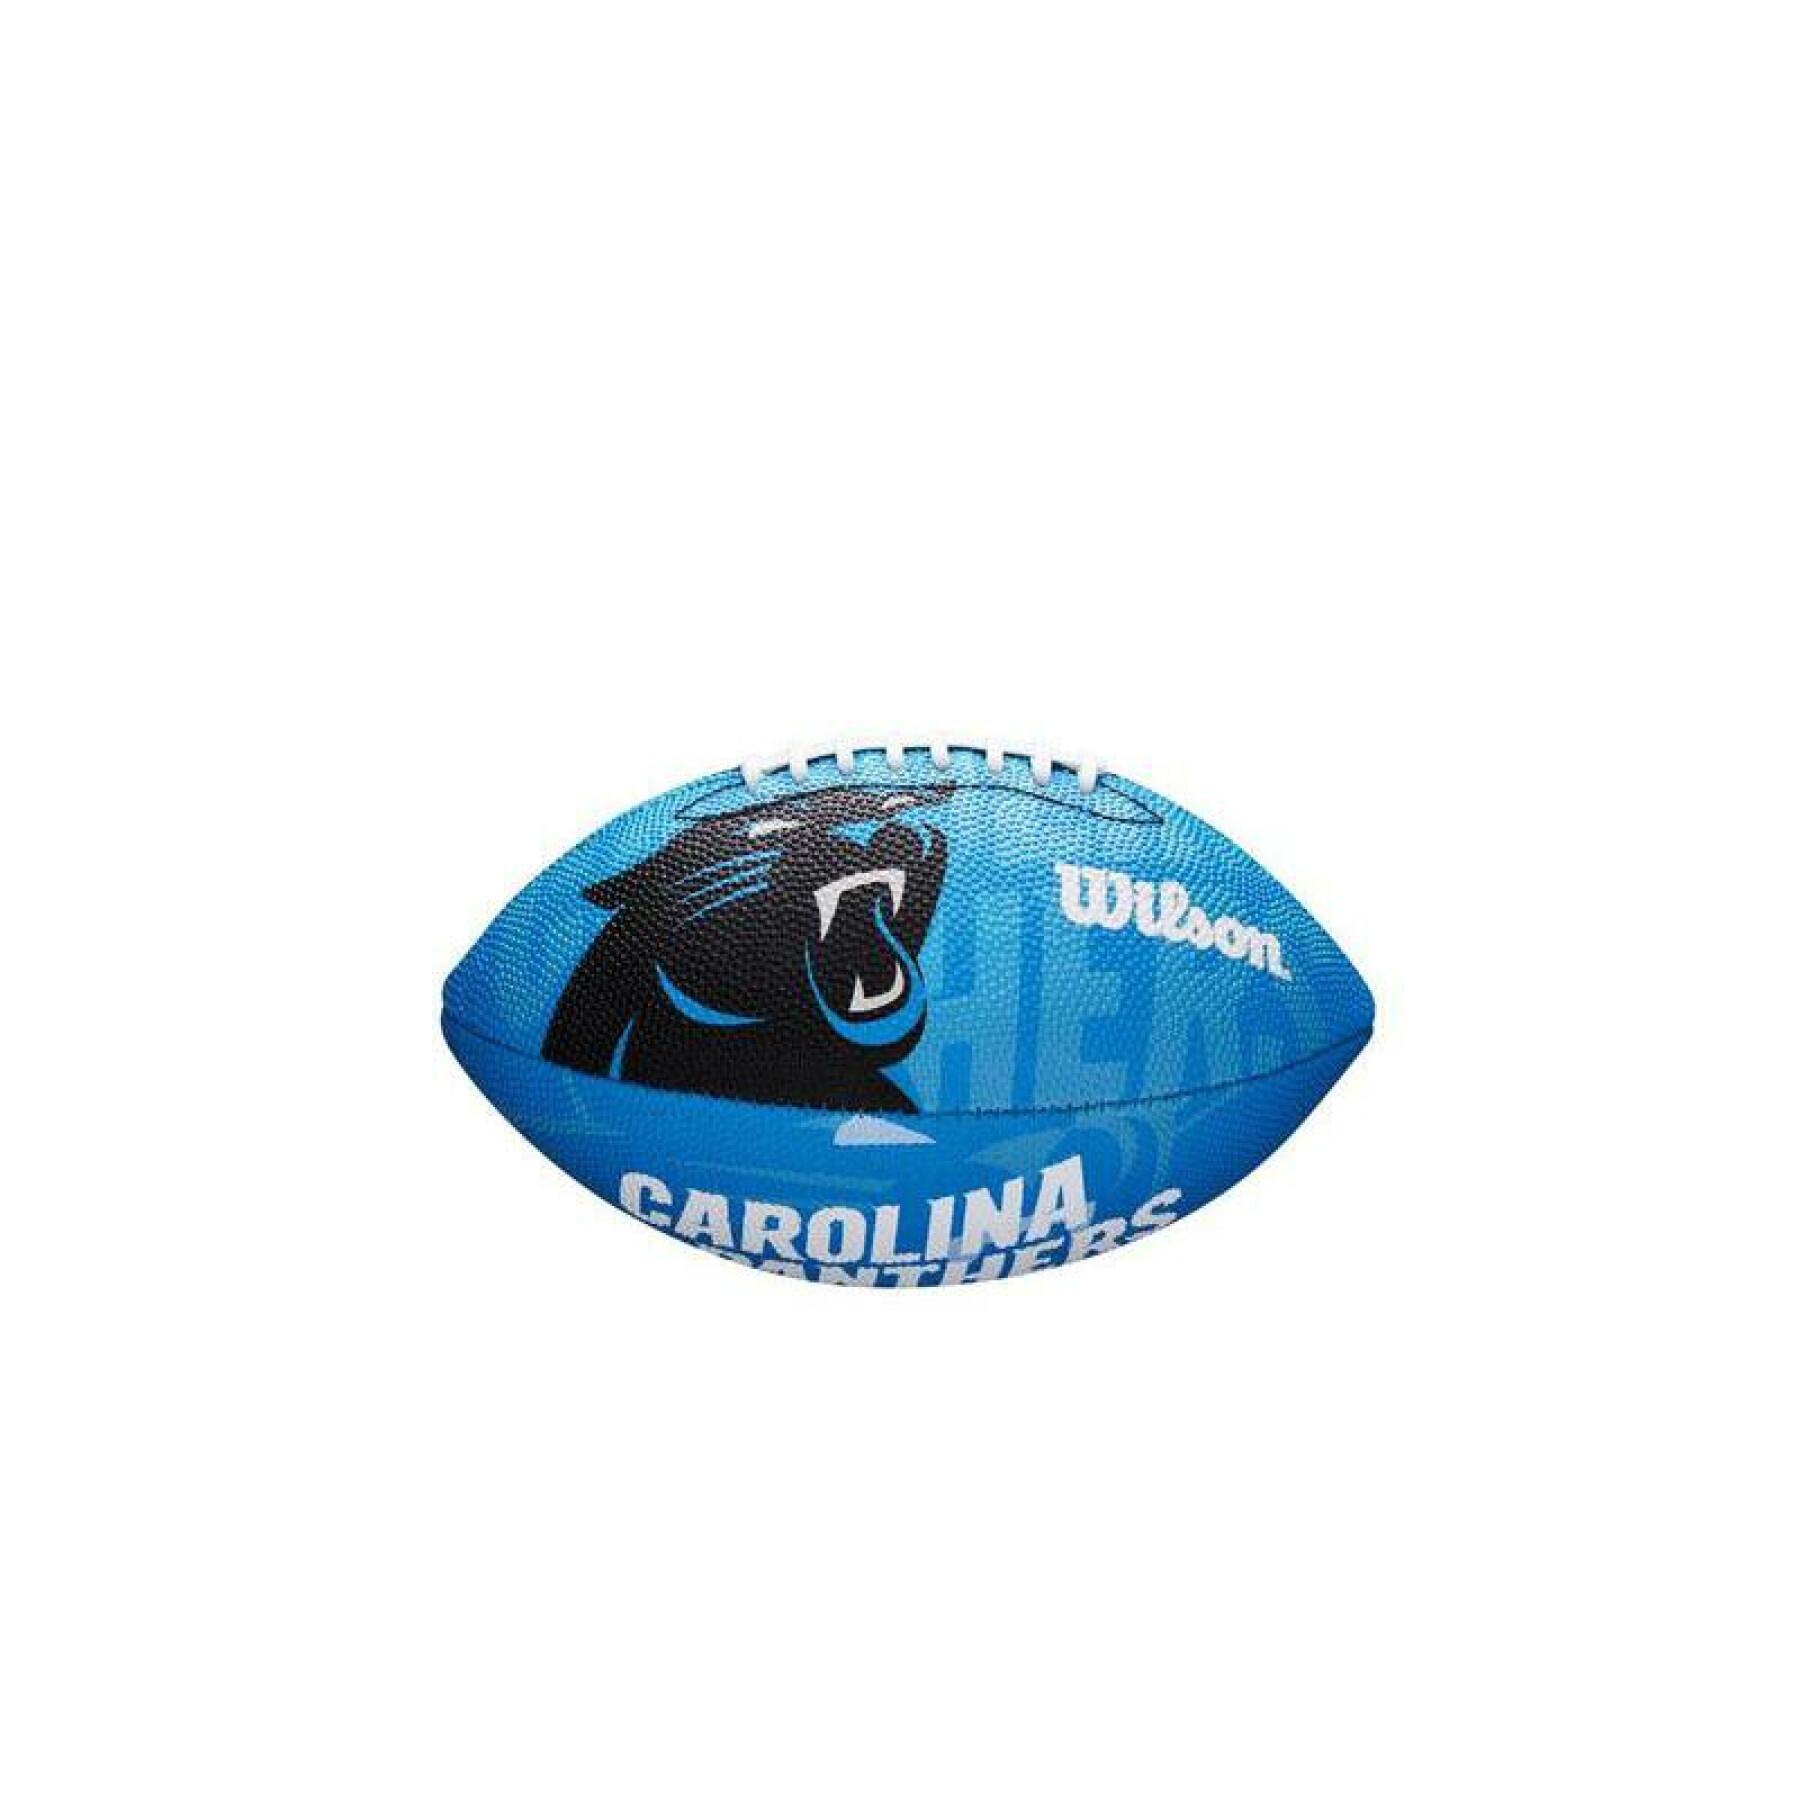 Mini balón infantil nfl Carolina Panthers